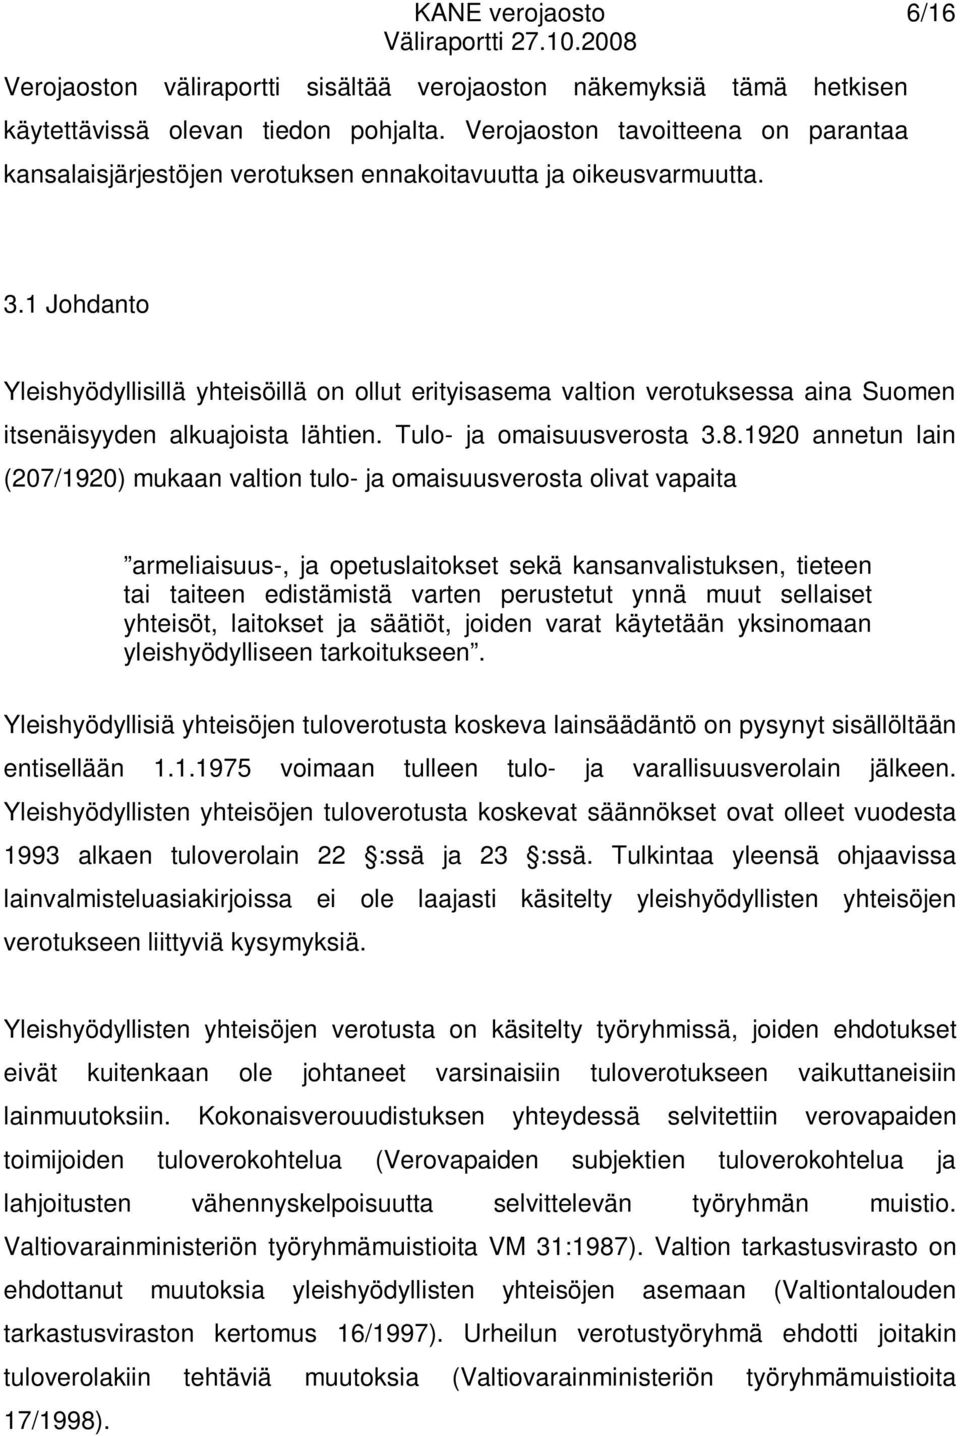 1 Johdanto Yleishyödyllisillä yhteisöillä on ollut erityisasema valtion verotuksessa aina Suomen itsenäisyyden alkuajoista lähtien. Tulo- ja omaisuusverosta 3.8.